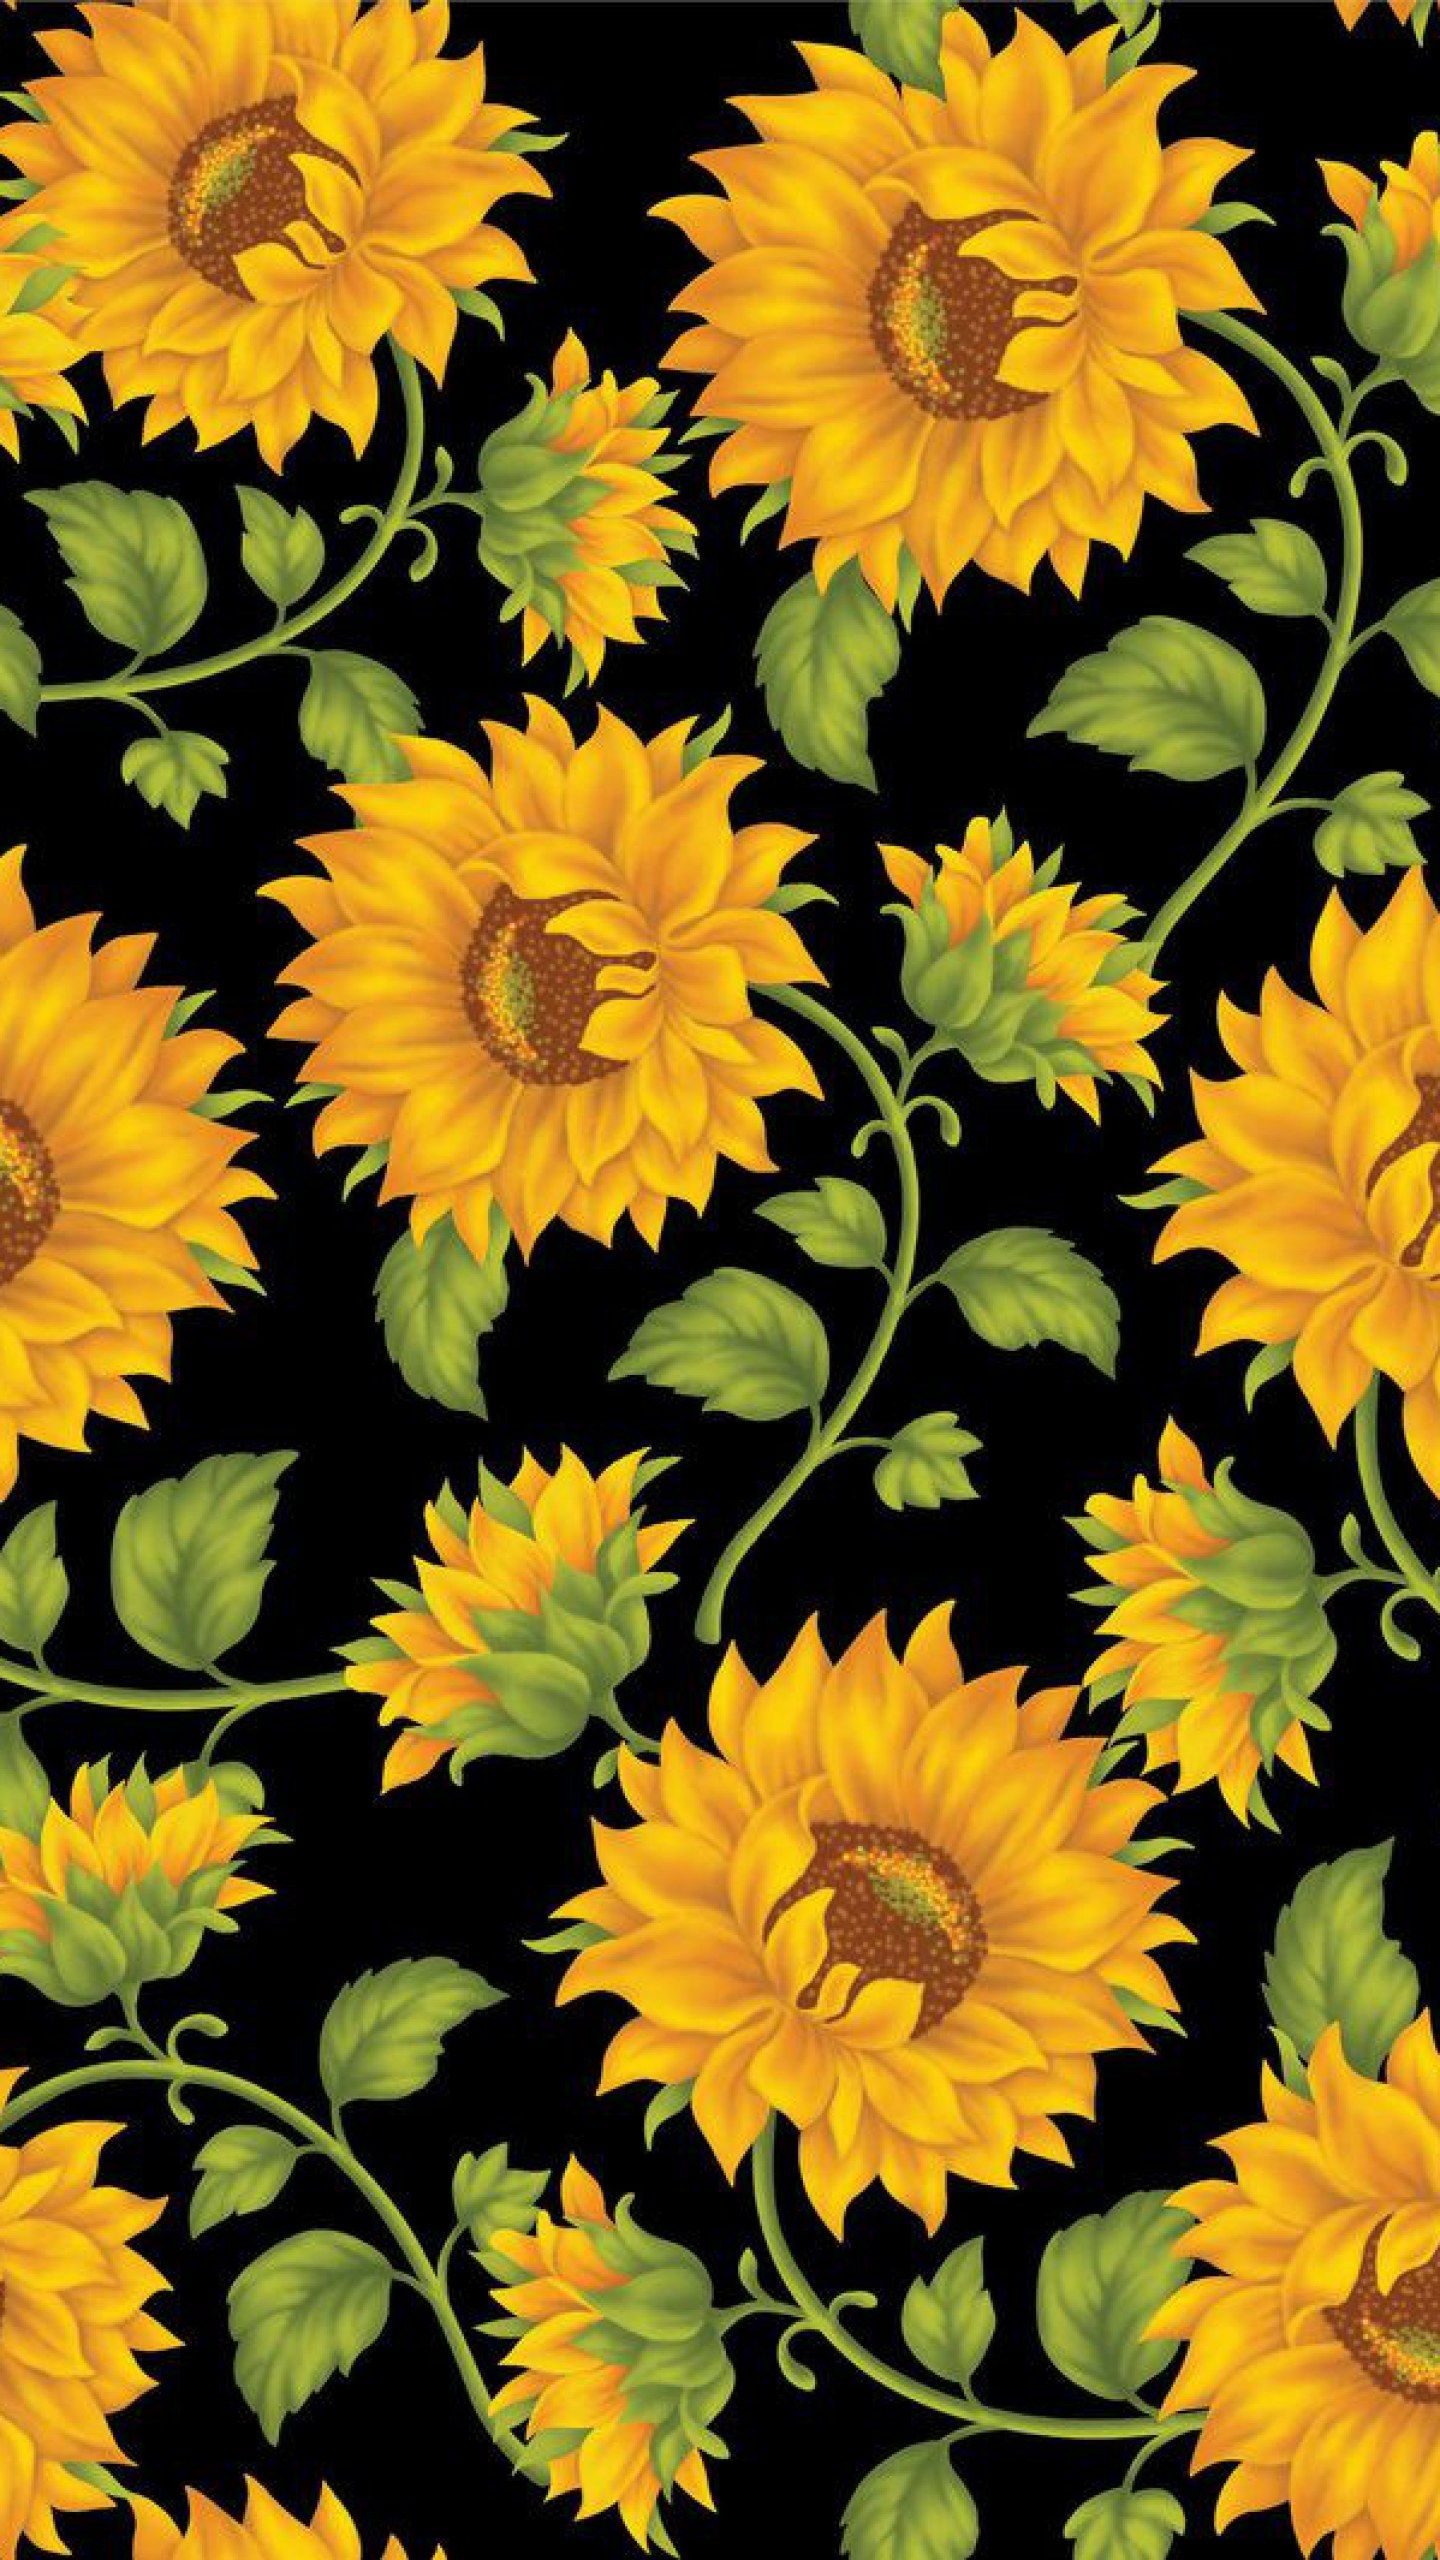 Aesthetic flower wallpaper laptop • Wallpaper For You HD Wallpaper For Desktop & Mobile